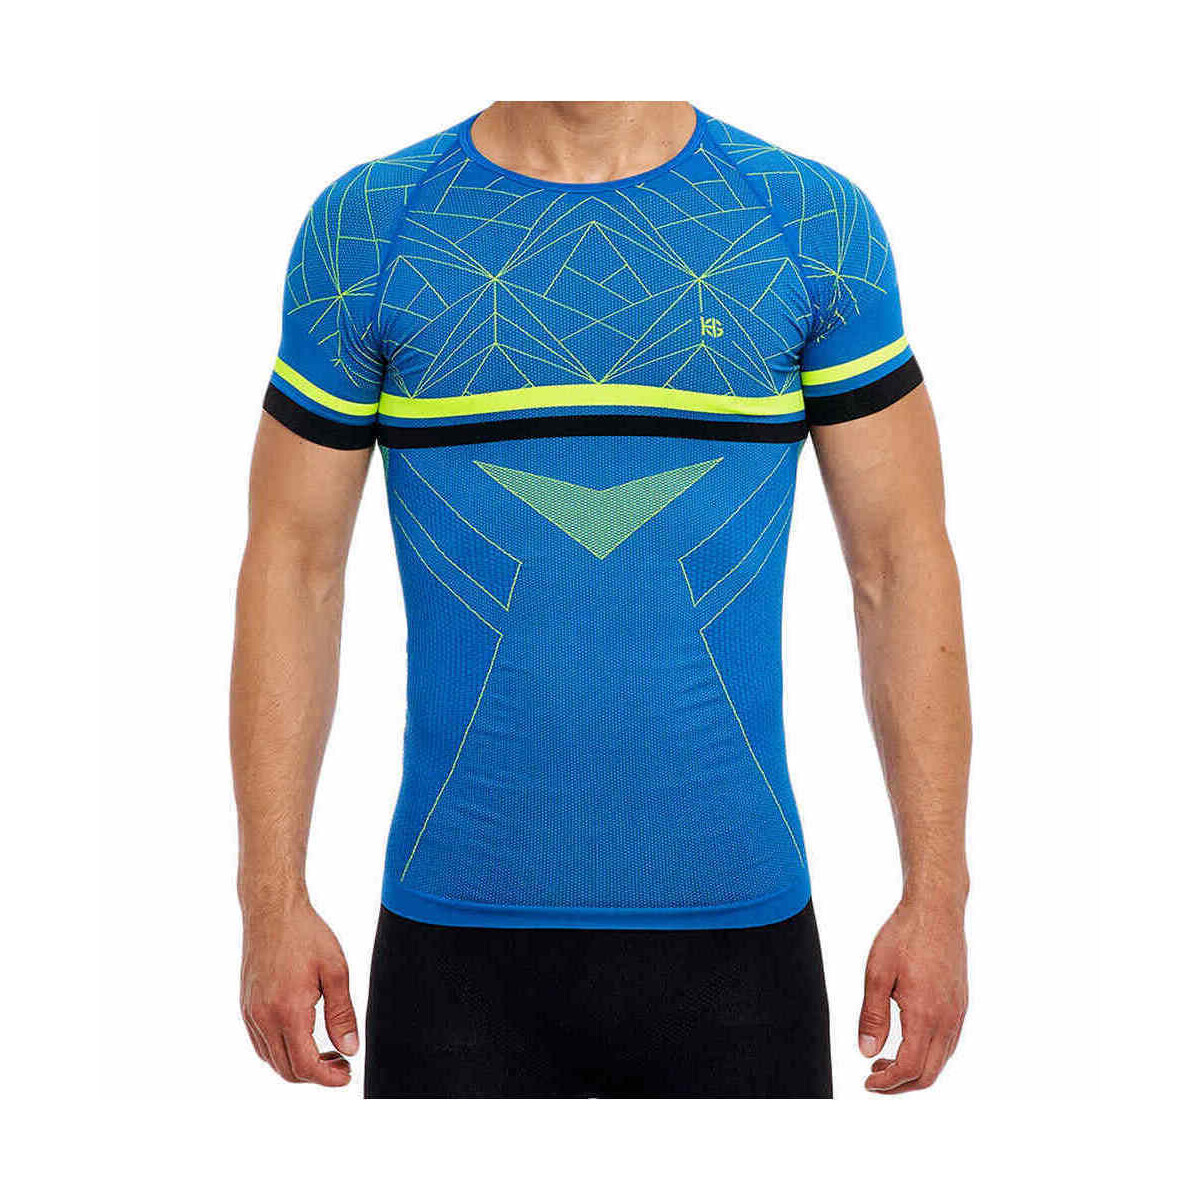 Vêtements Homme T-shirts manches courtes Sport Hg HG-SHARP Bleu